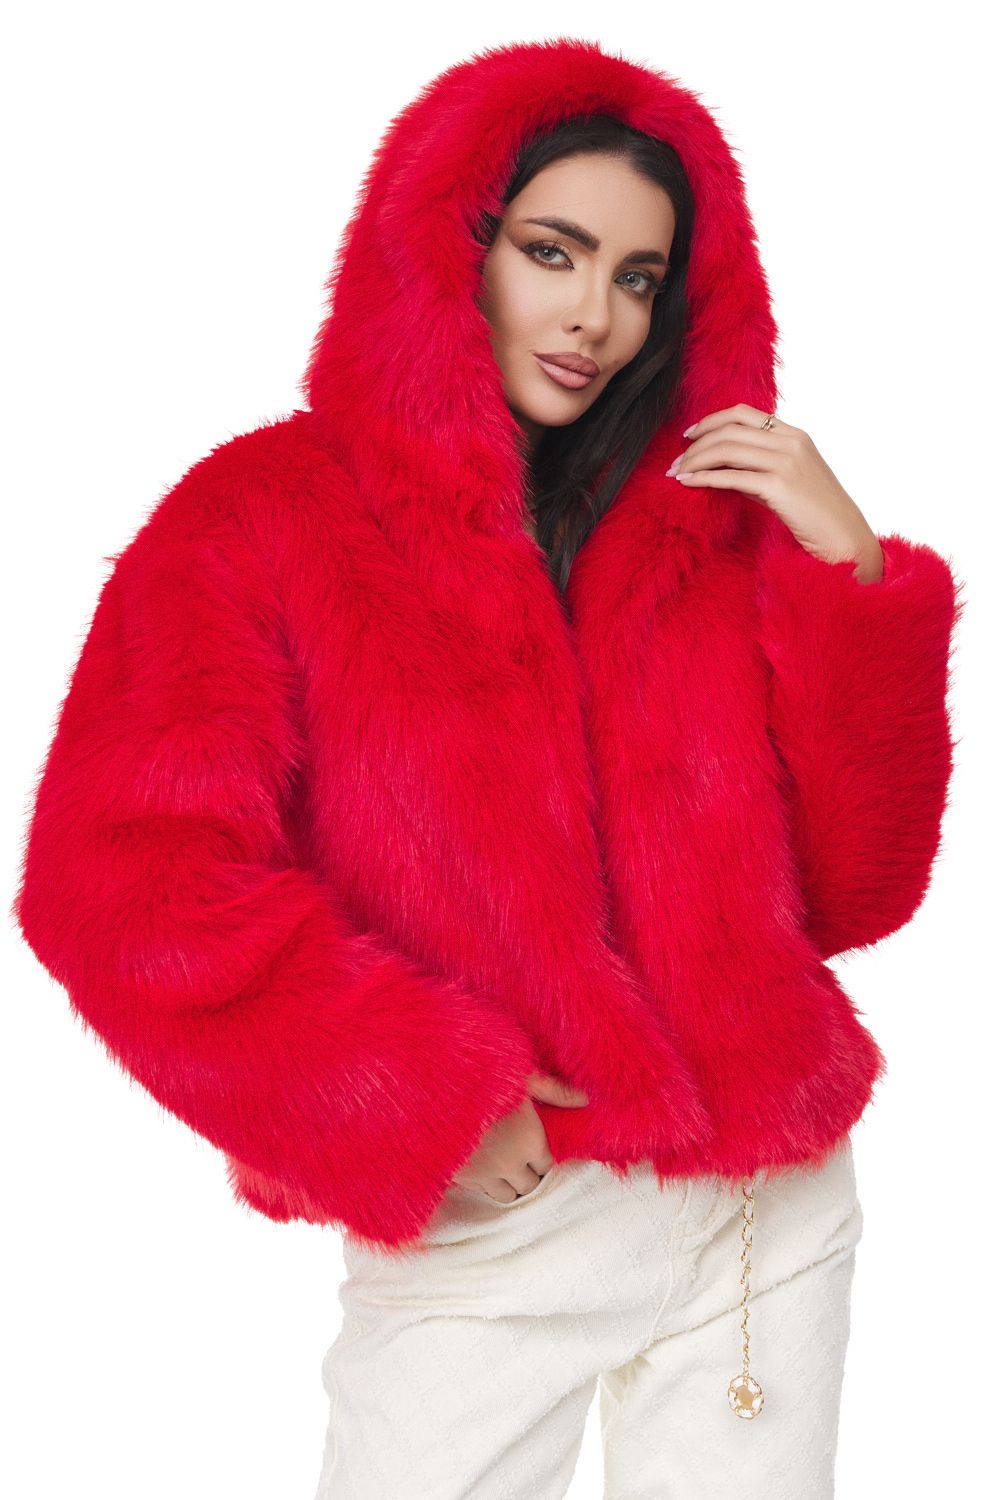 Secelia Bogas elegant red fur coat